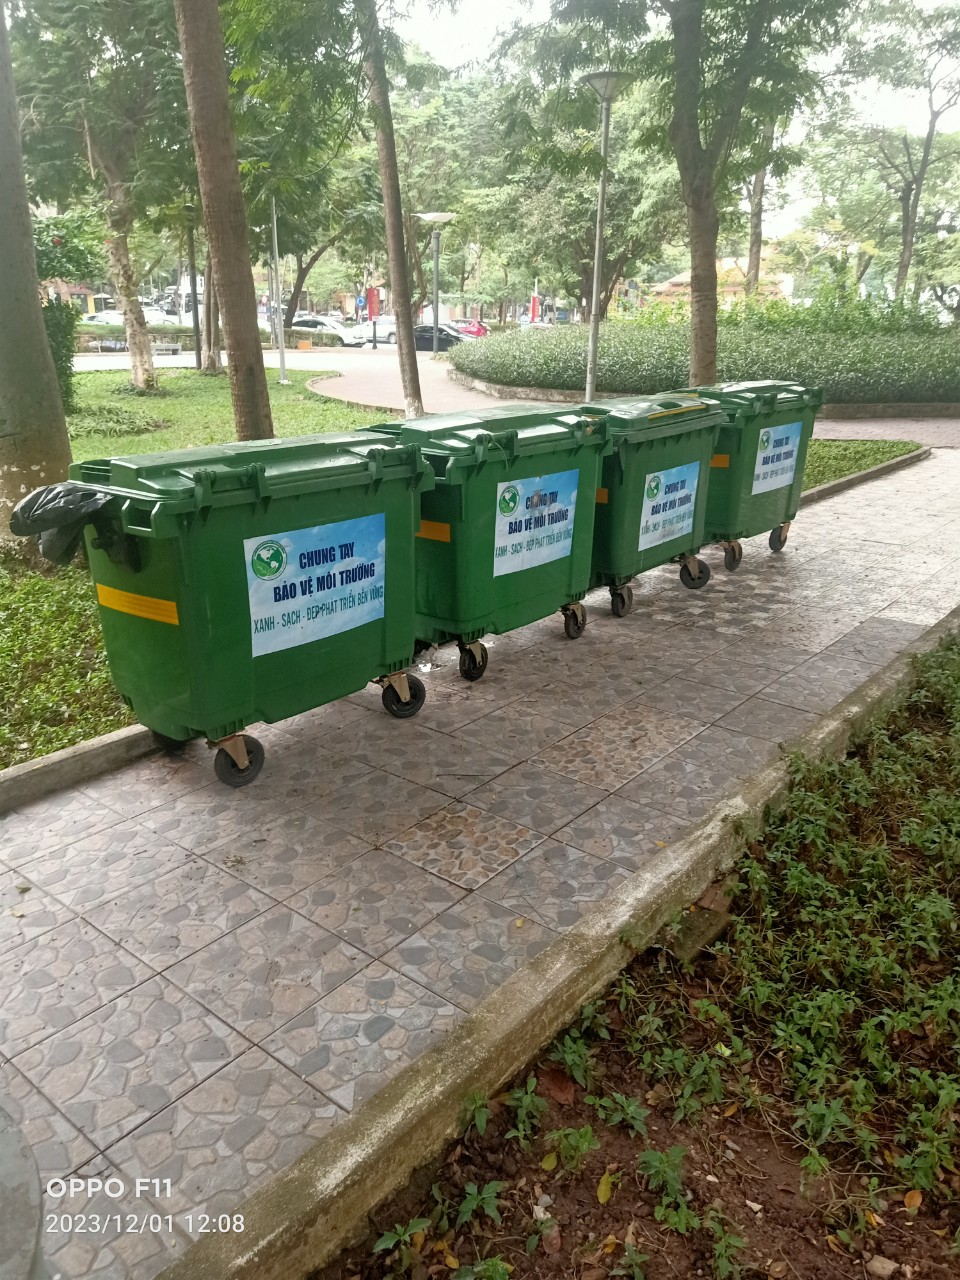  Những người gìn giữ “lá phổi xanh” cho dải trung tâm thành phố Hải Phòng - Ảnh 4.